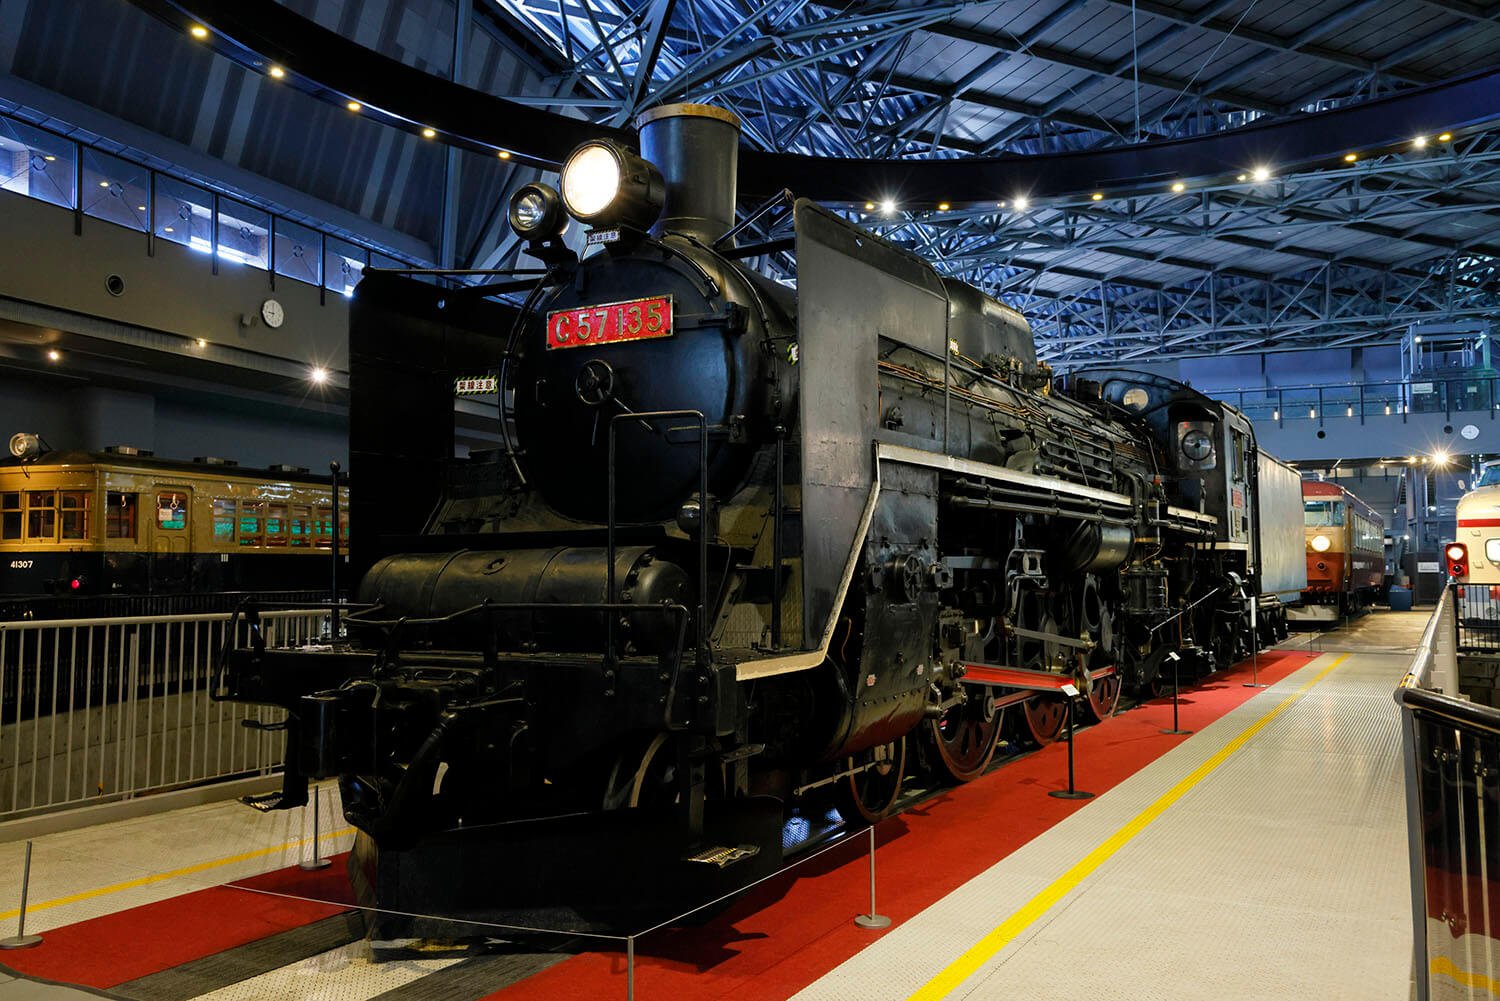 「1号機関車」と「C57 135号機」。どちらも日本の鉄道史における重要車両だ。